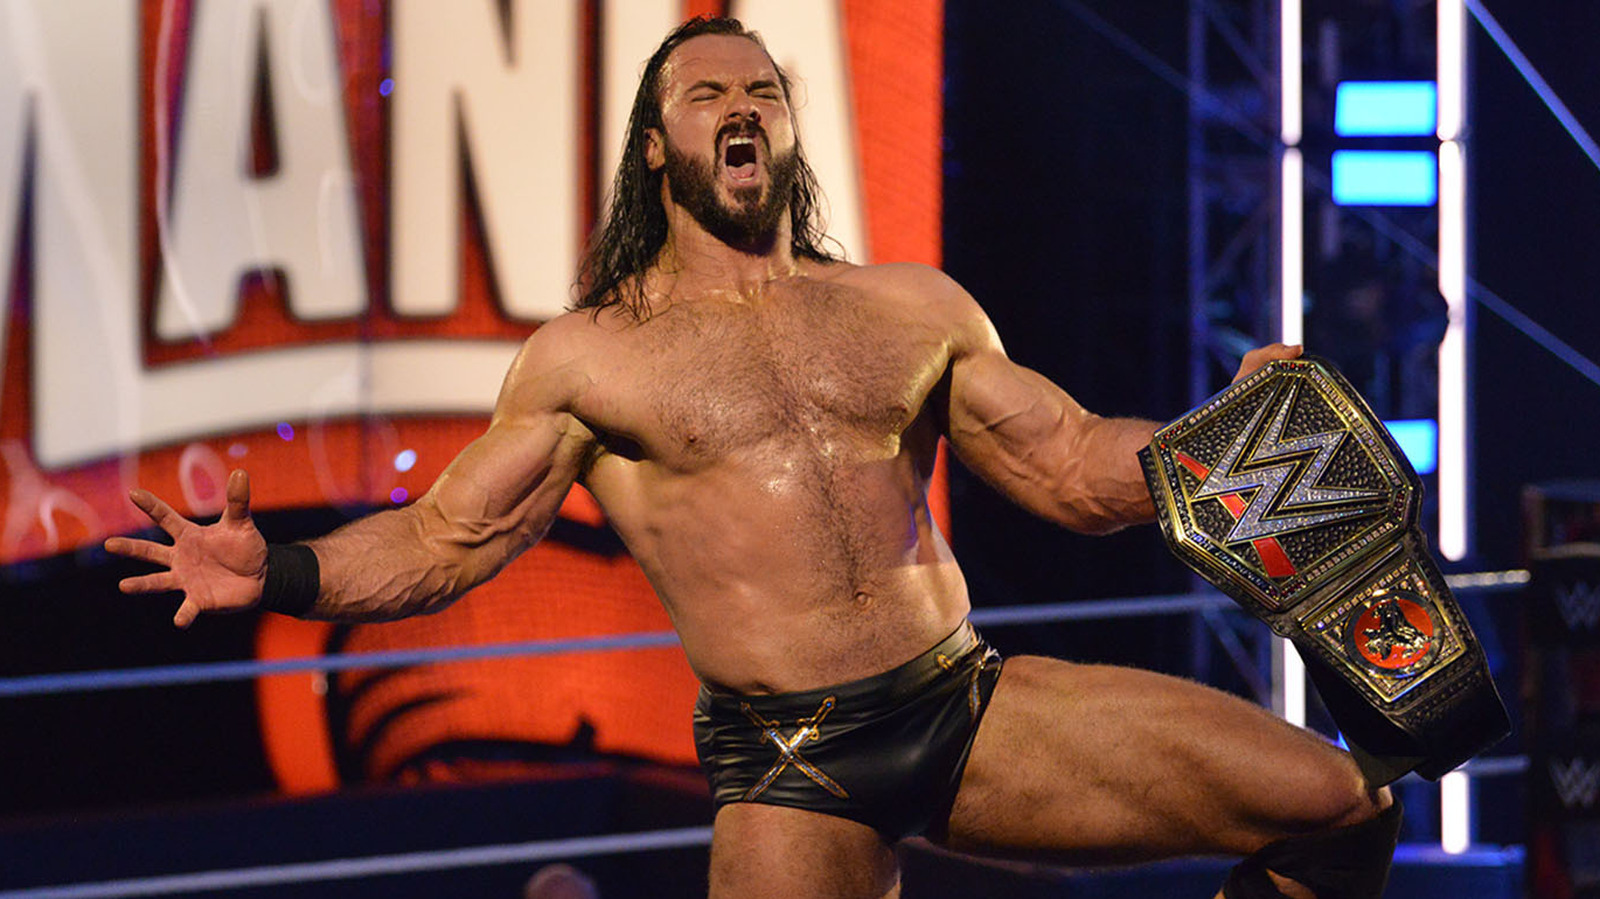 El paquete promocional de Drew McIntyre recuerda la victoria del campeonato de la WWE durante la pandemia